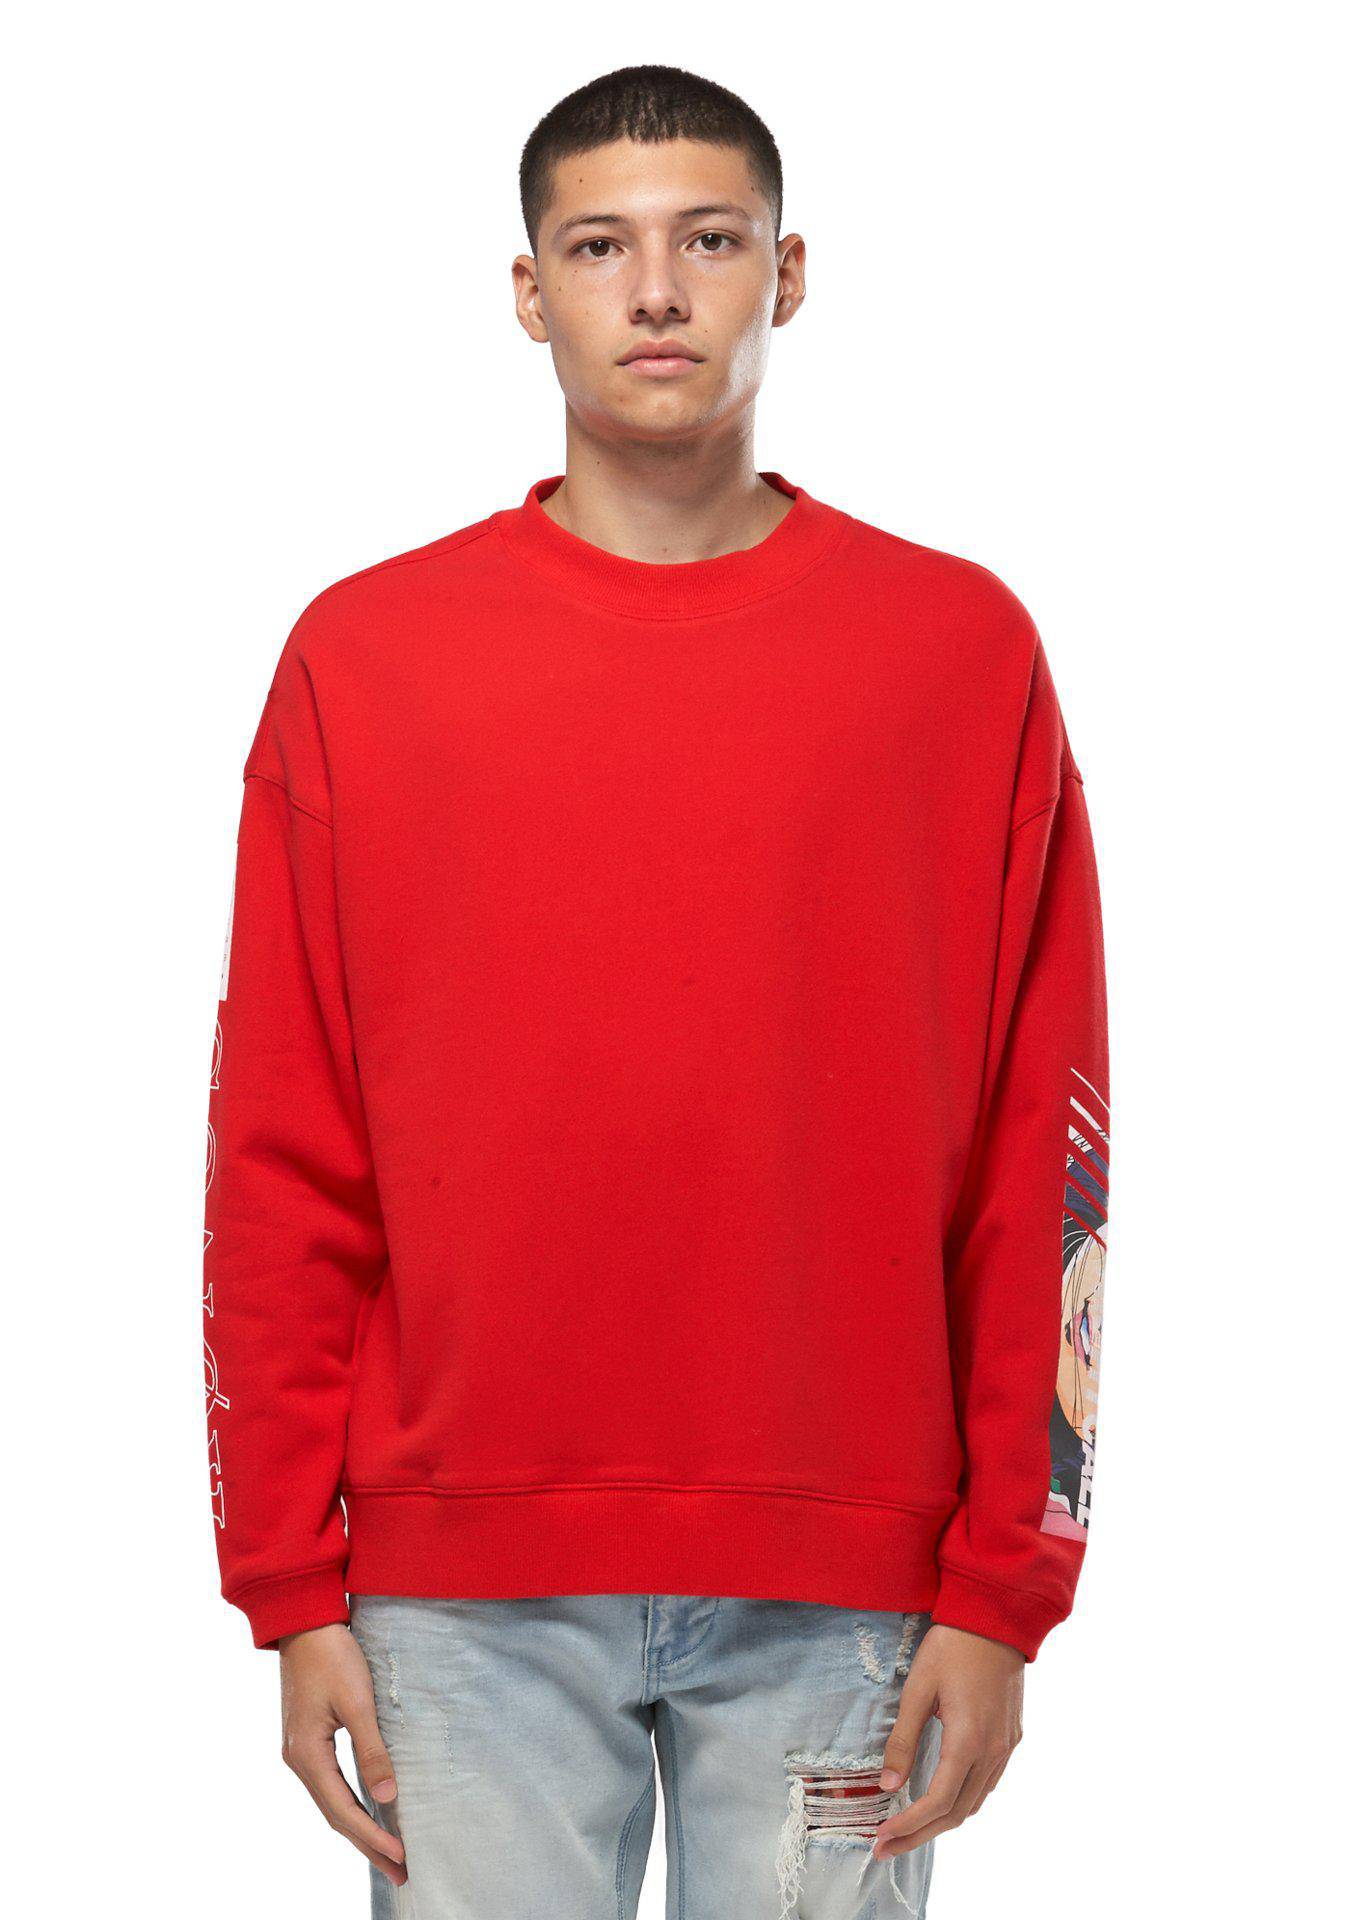 Konus Men's Oversize Sweatshirt in Red by Shop at Konus